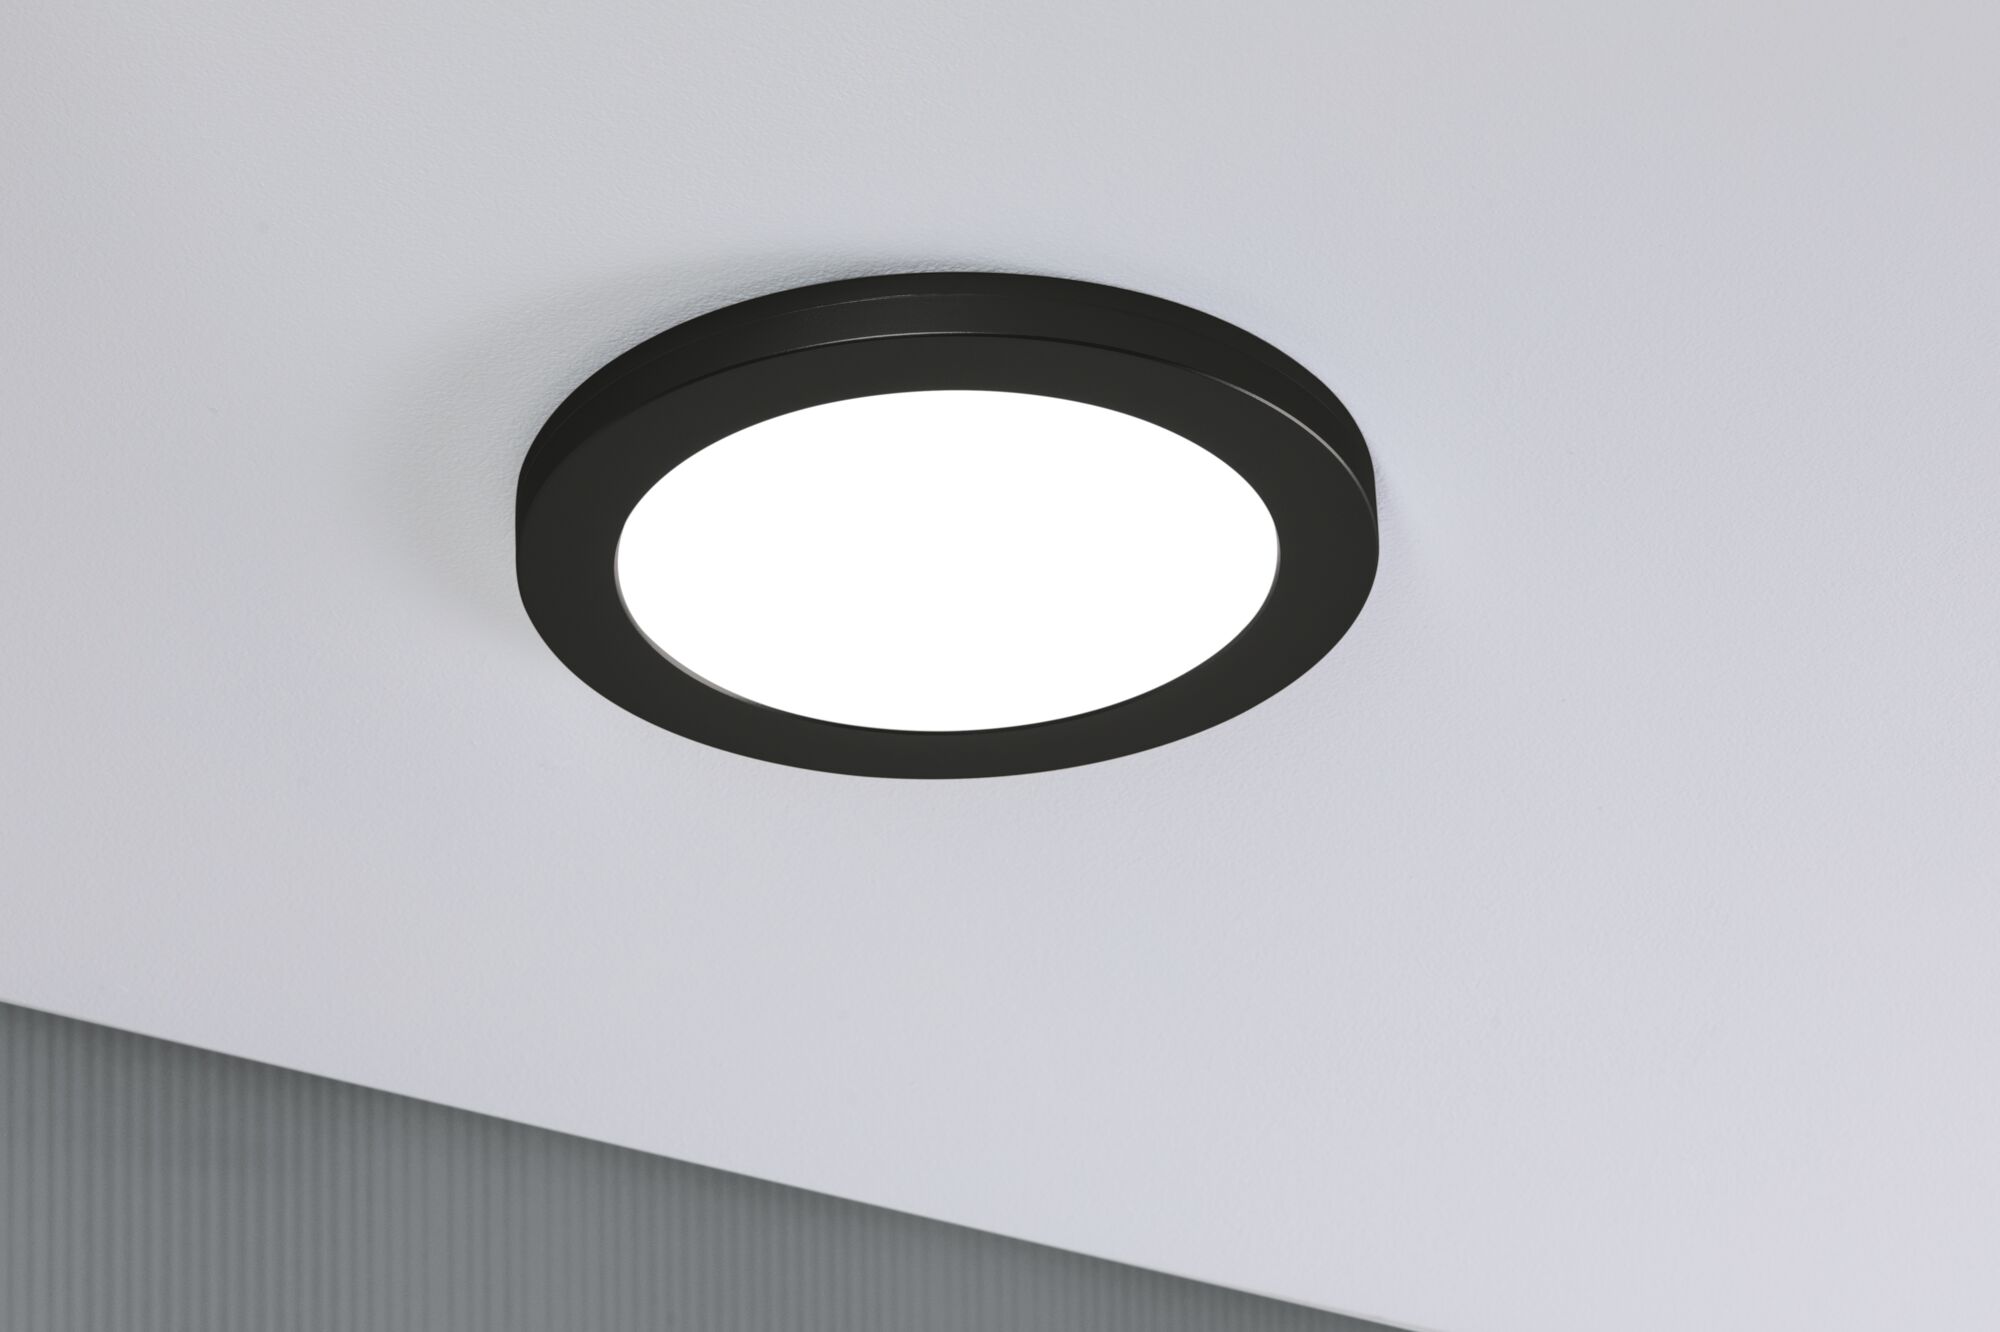 Paulmann 93097 LED Einbaupanel Schwarz rund 225mm Cover-it 2in1 neutralweiß